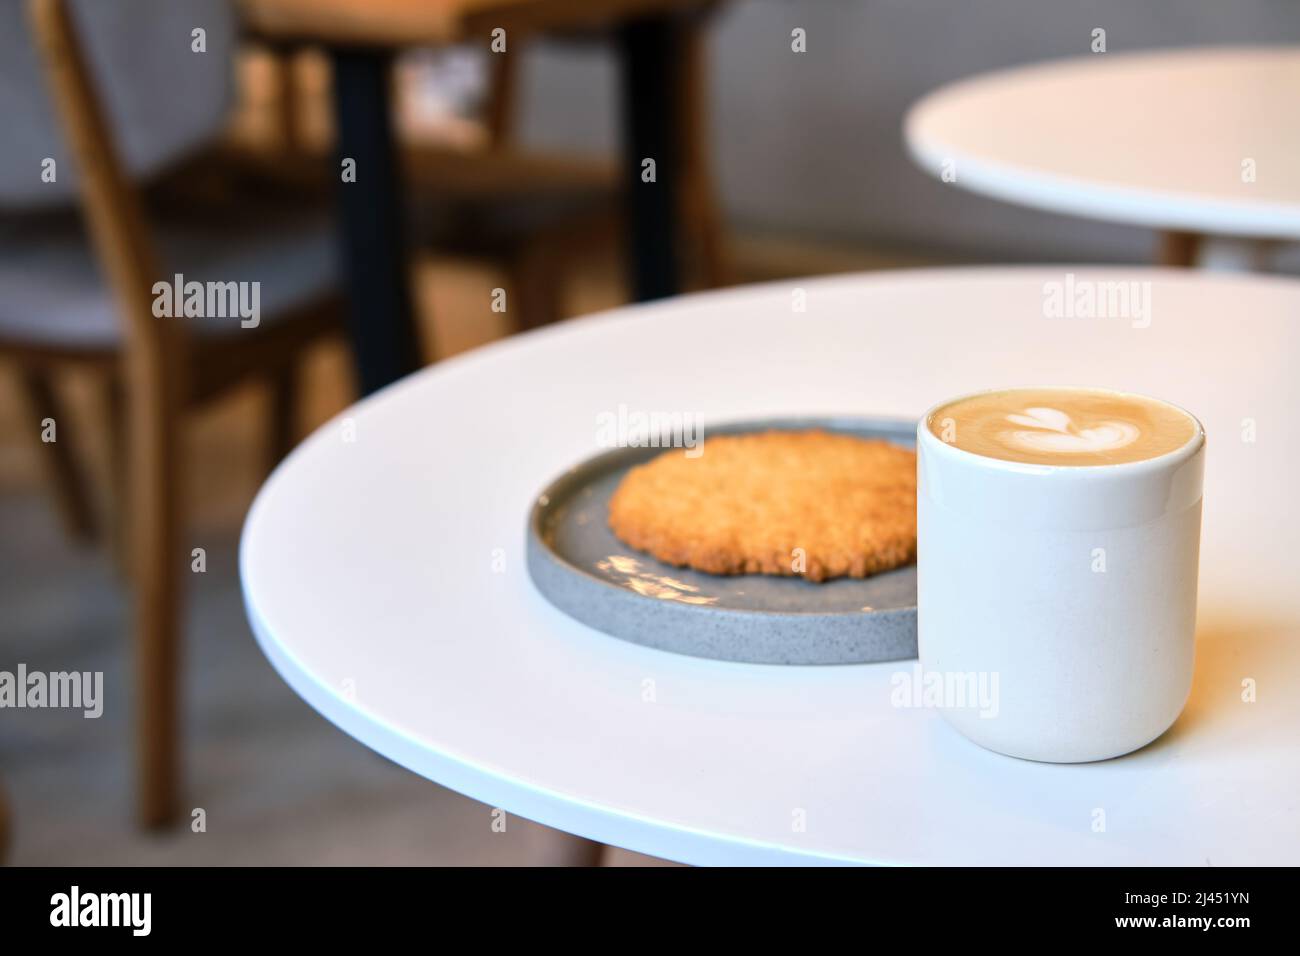 Der morgendliche Brunch im Café ist auf dem Tisch. Riesenkeks und Cappuccino mit schönem Milchschaum. Manchmal muss man in dieser schnelllebigen Welt eine Pause einlegen Stockfoto